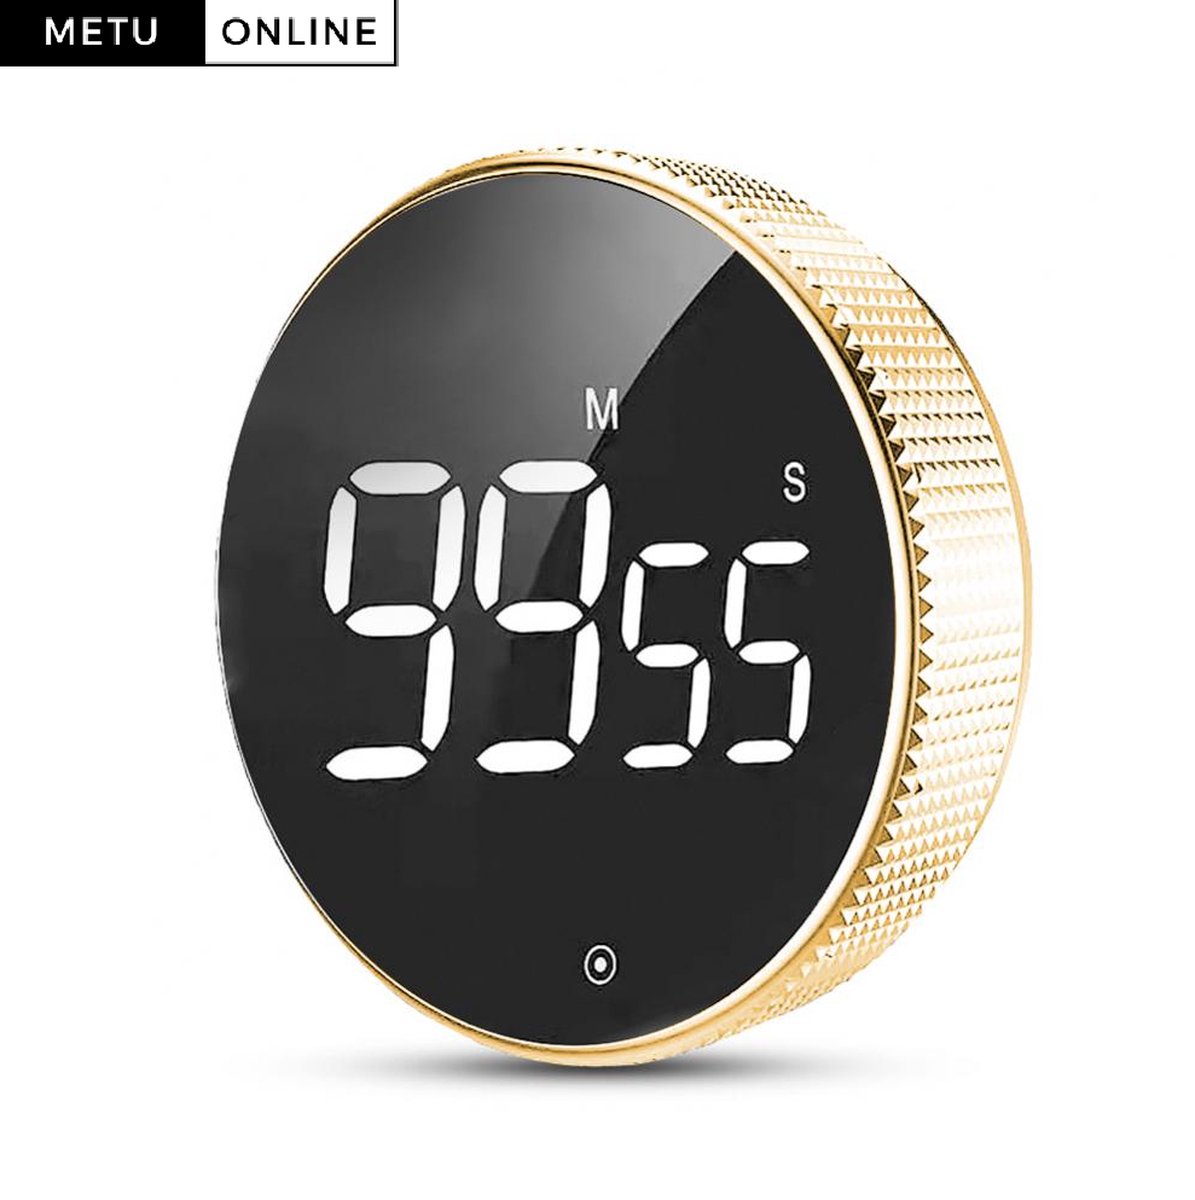 Digitale Kookwekker Goud van METU-Online - Smart Timer - LED Display - Magnetisch met Handige Draaiknop